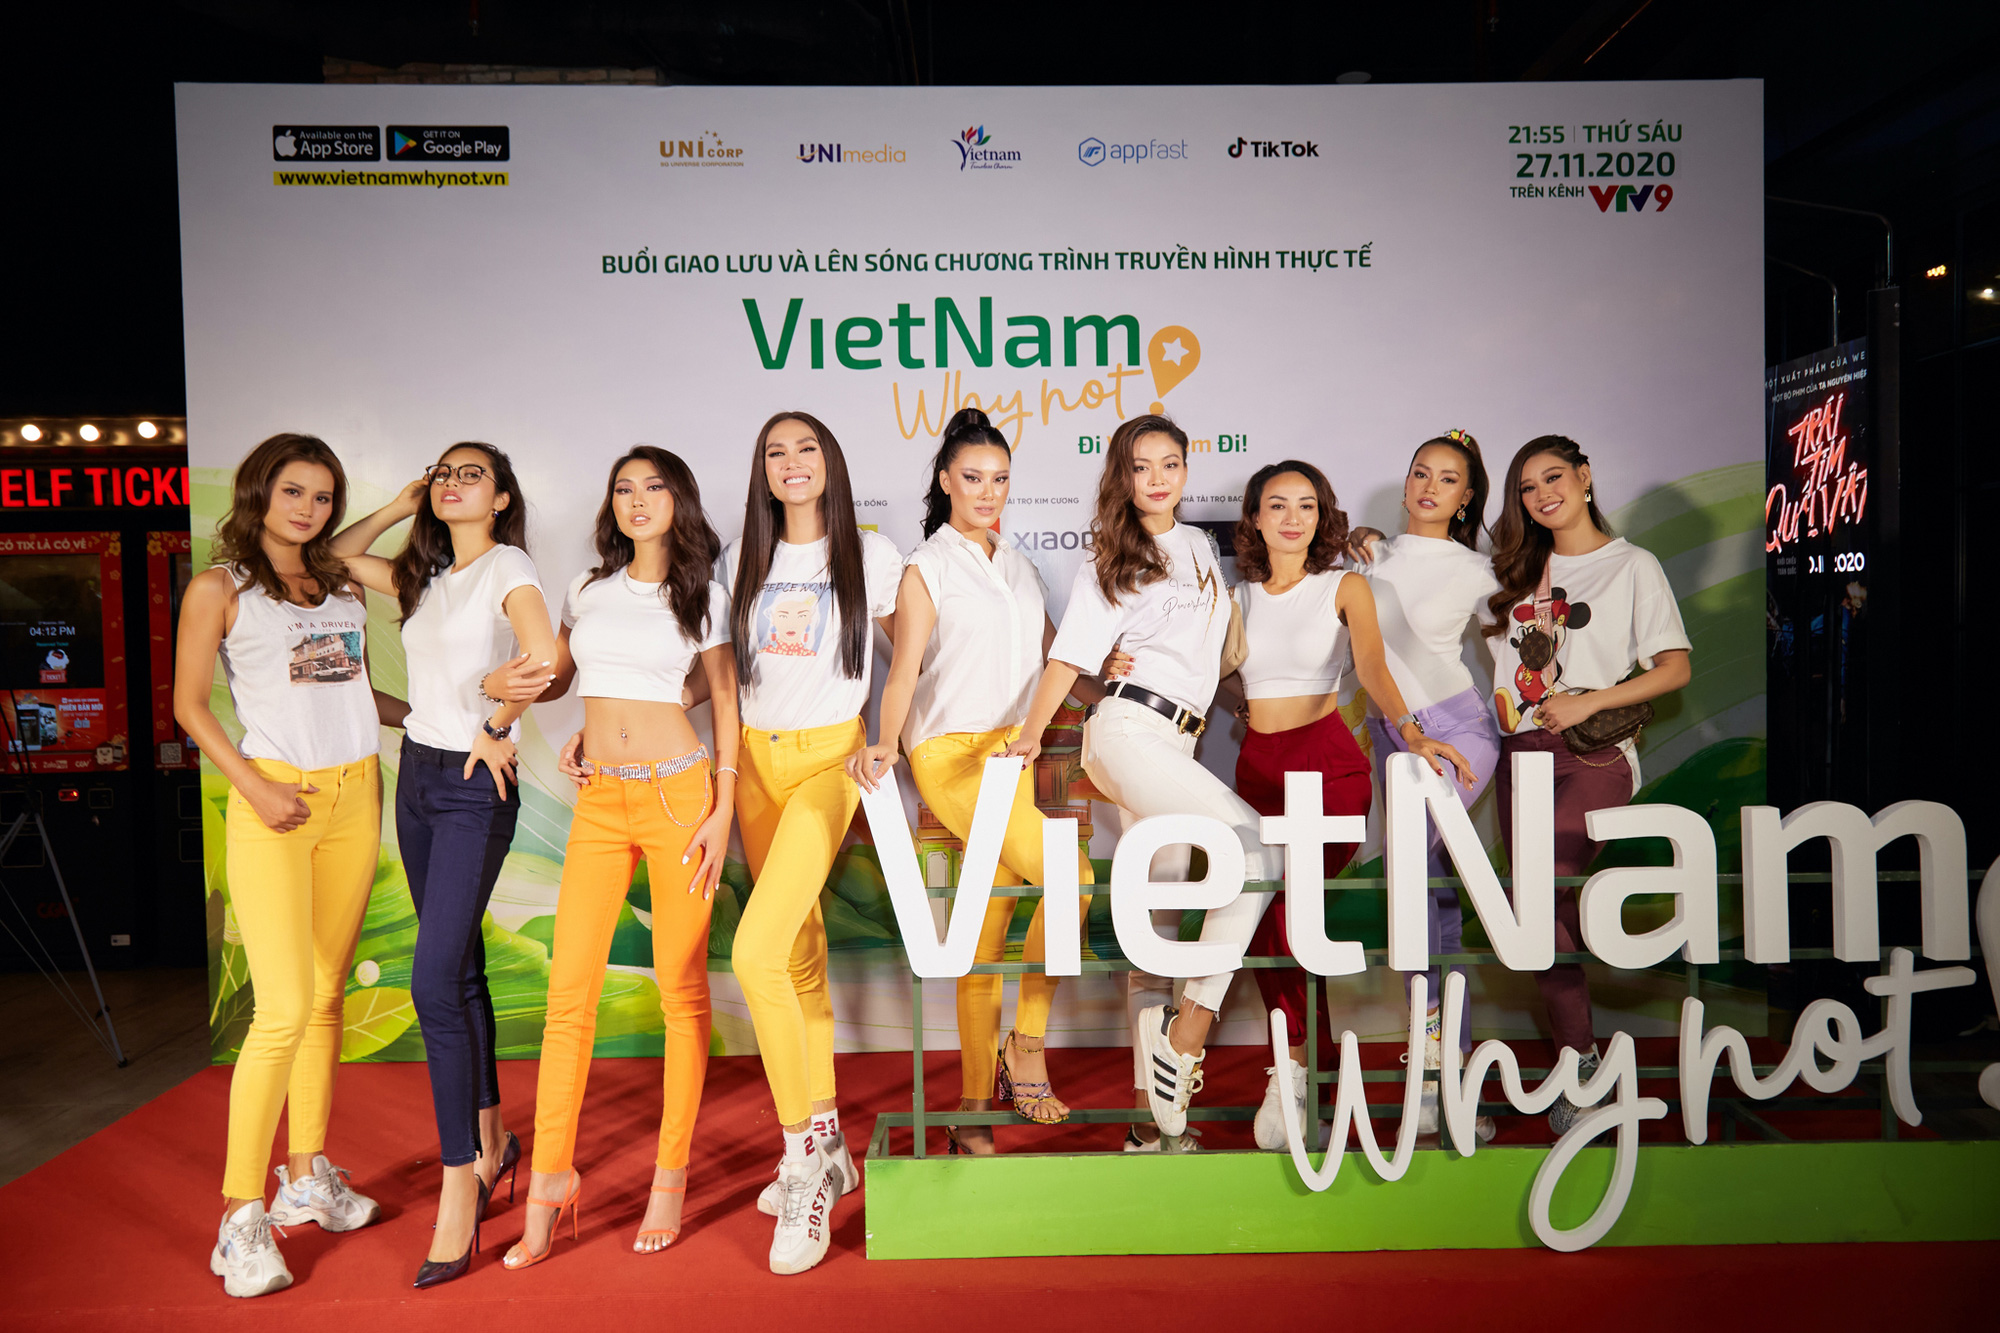 Muôn hình biểu cảm của các hoa hậu, á hậu khi xem tập 1 “Đi Việt Nam đi” - Ảnh 2.